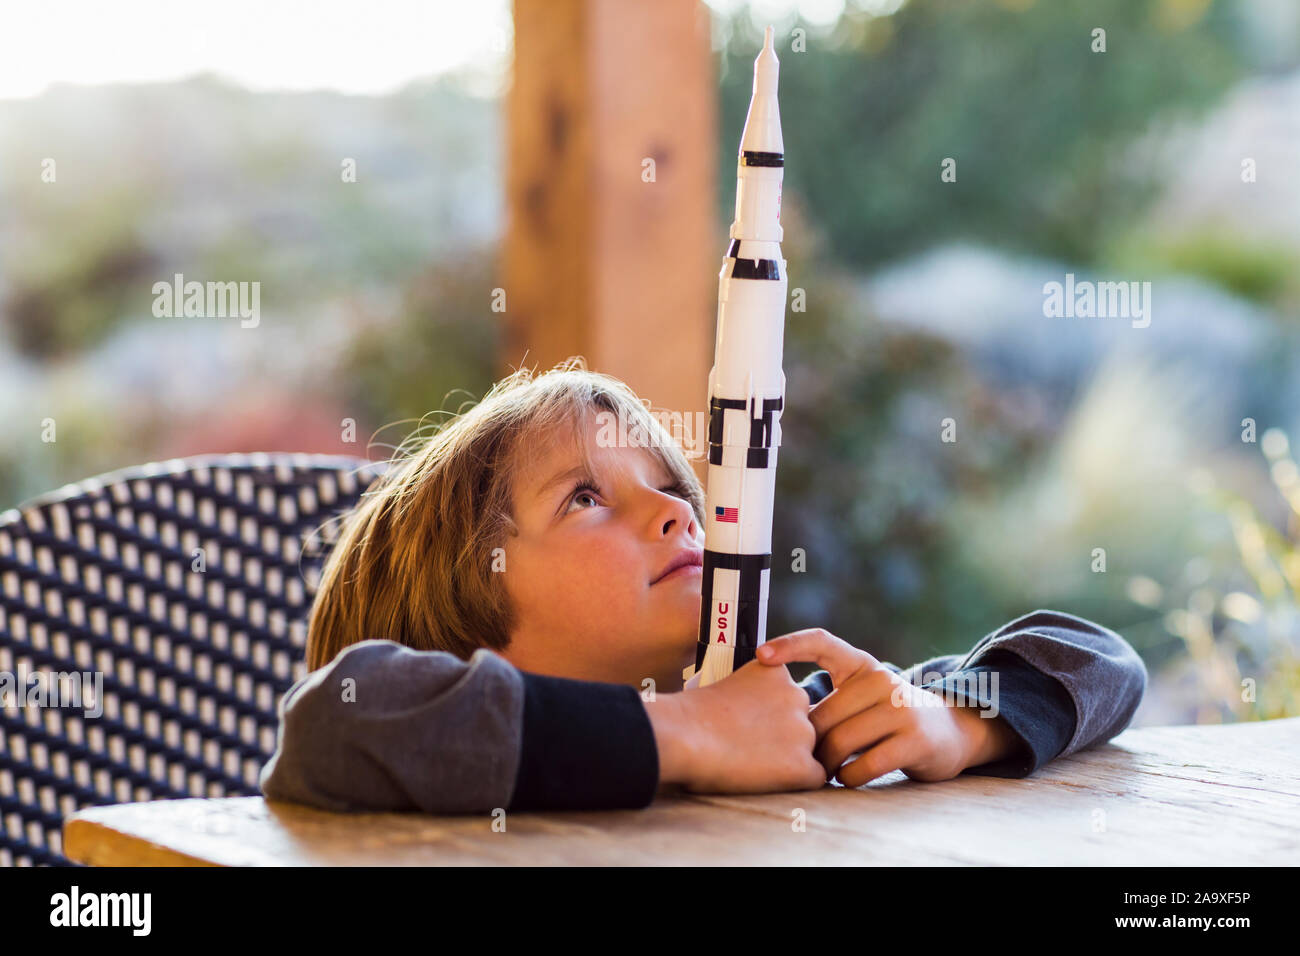 Ein Junge spielt mit einem Spielzeug Nasa Saturn 5 Rakete, Tag träumen über Raumfahrt. Stockfoto